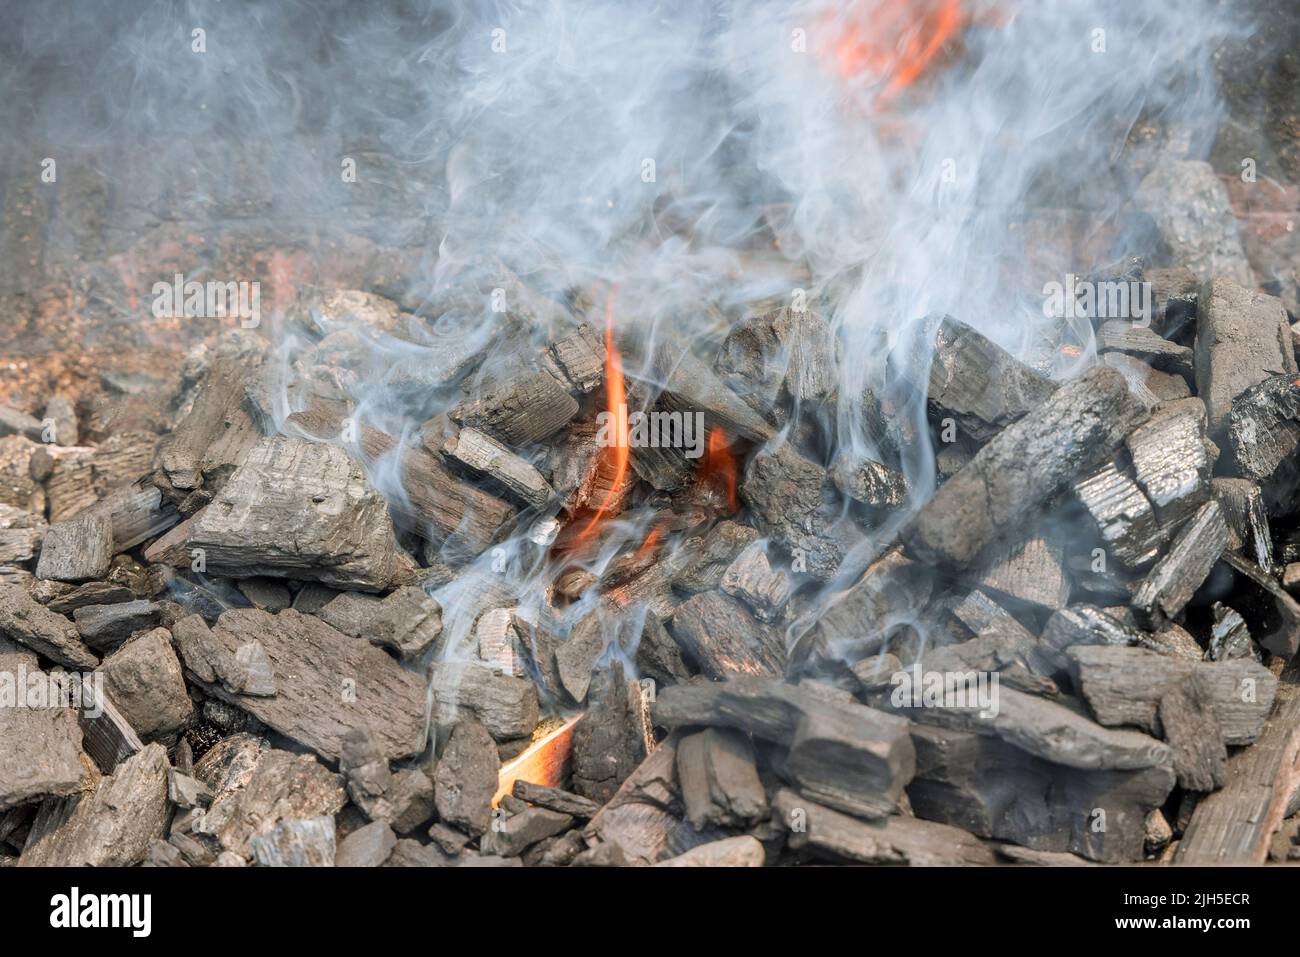 Utilisation de charbon chaud flamboyant pour faire cuire le barbecue sur un barbecue Banque D'Images